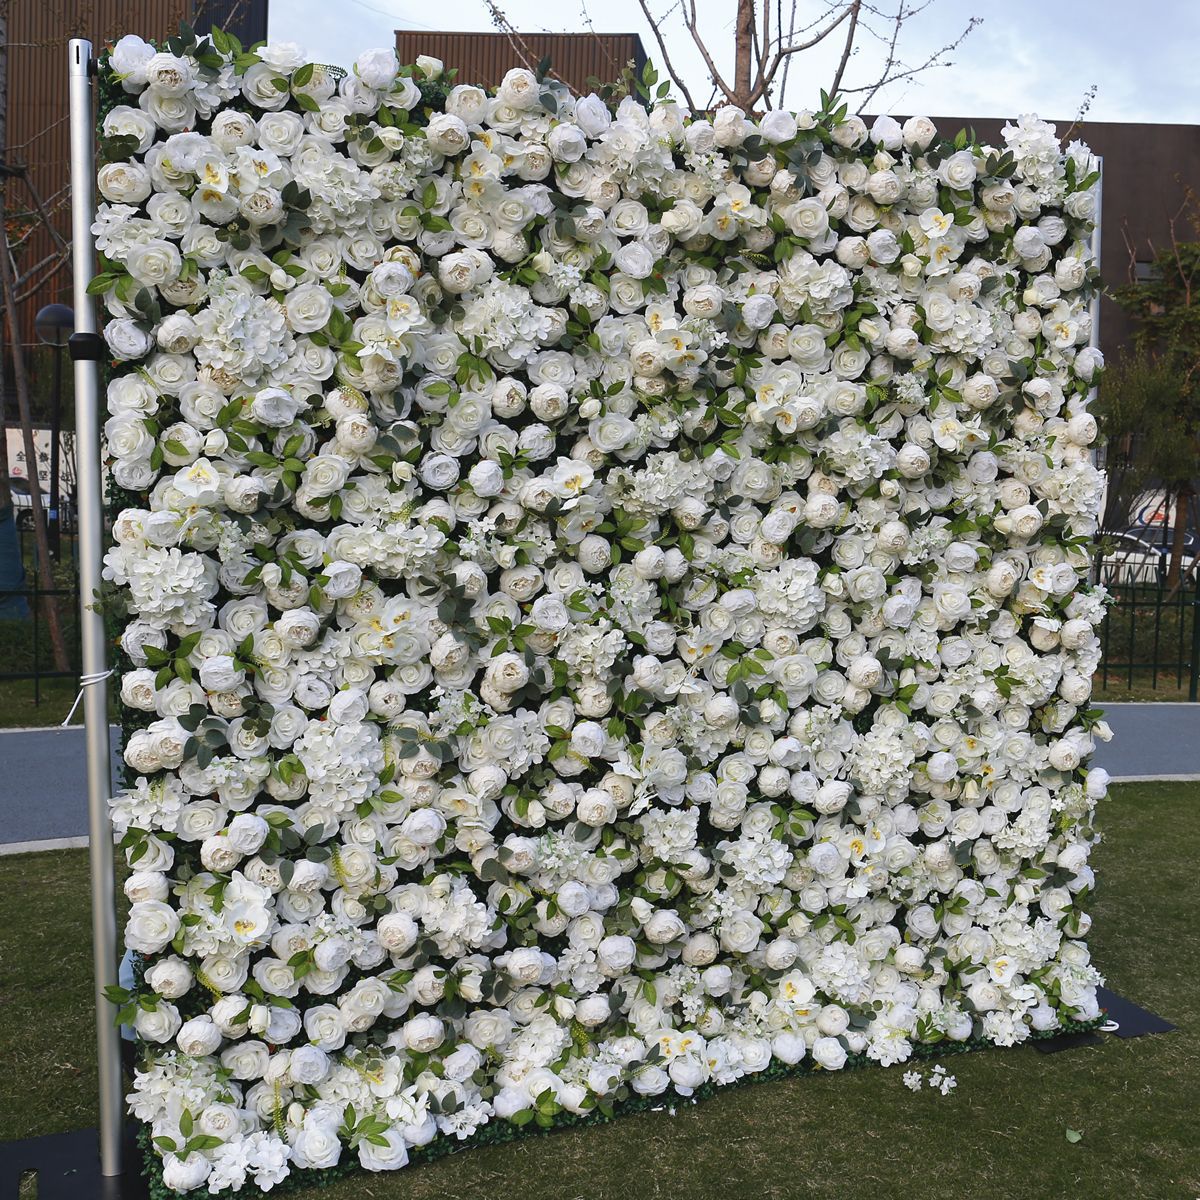 सफेद कपड़ा नीचे फूल दीवार पृष्ठभूमि दीवार शादी सिमुलेशन फूल शादी मॉल खिड़की सजावट पृष्ठभूमि peony फूल दीवार